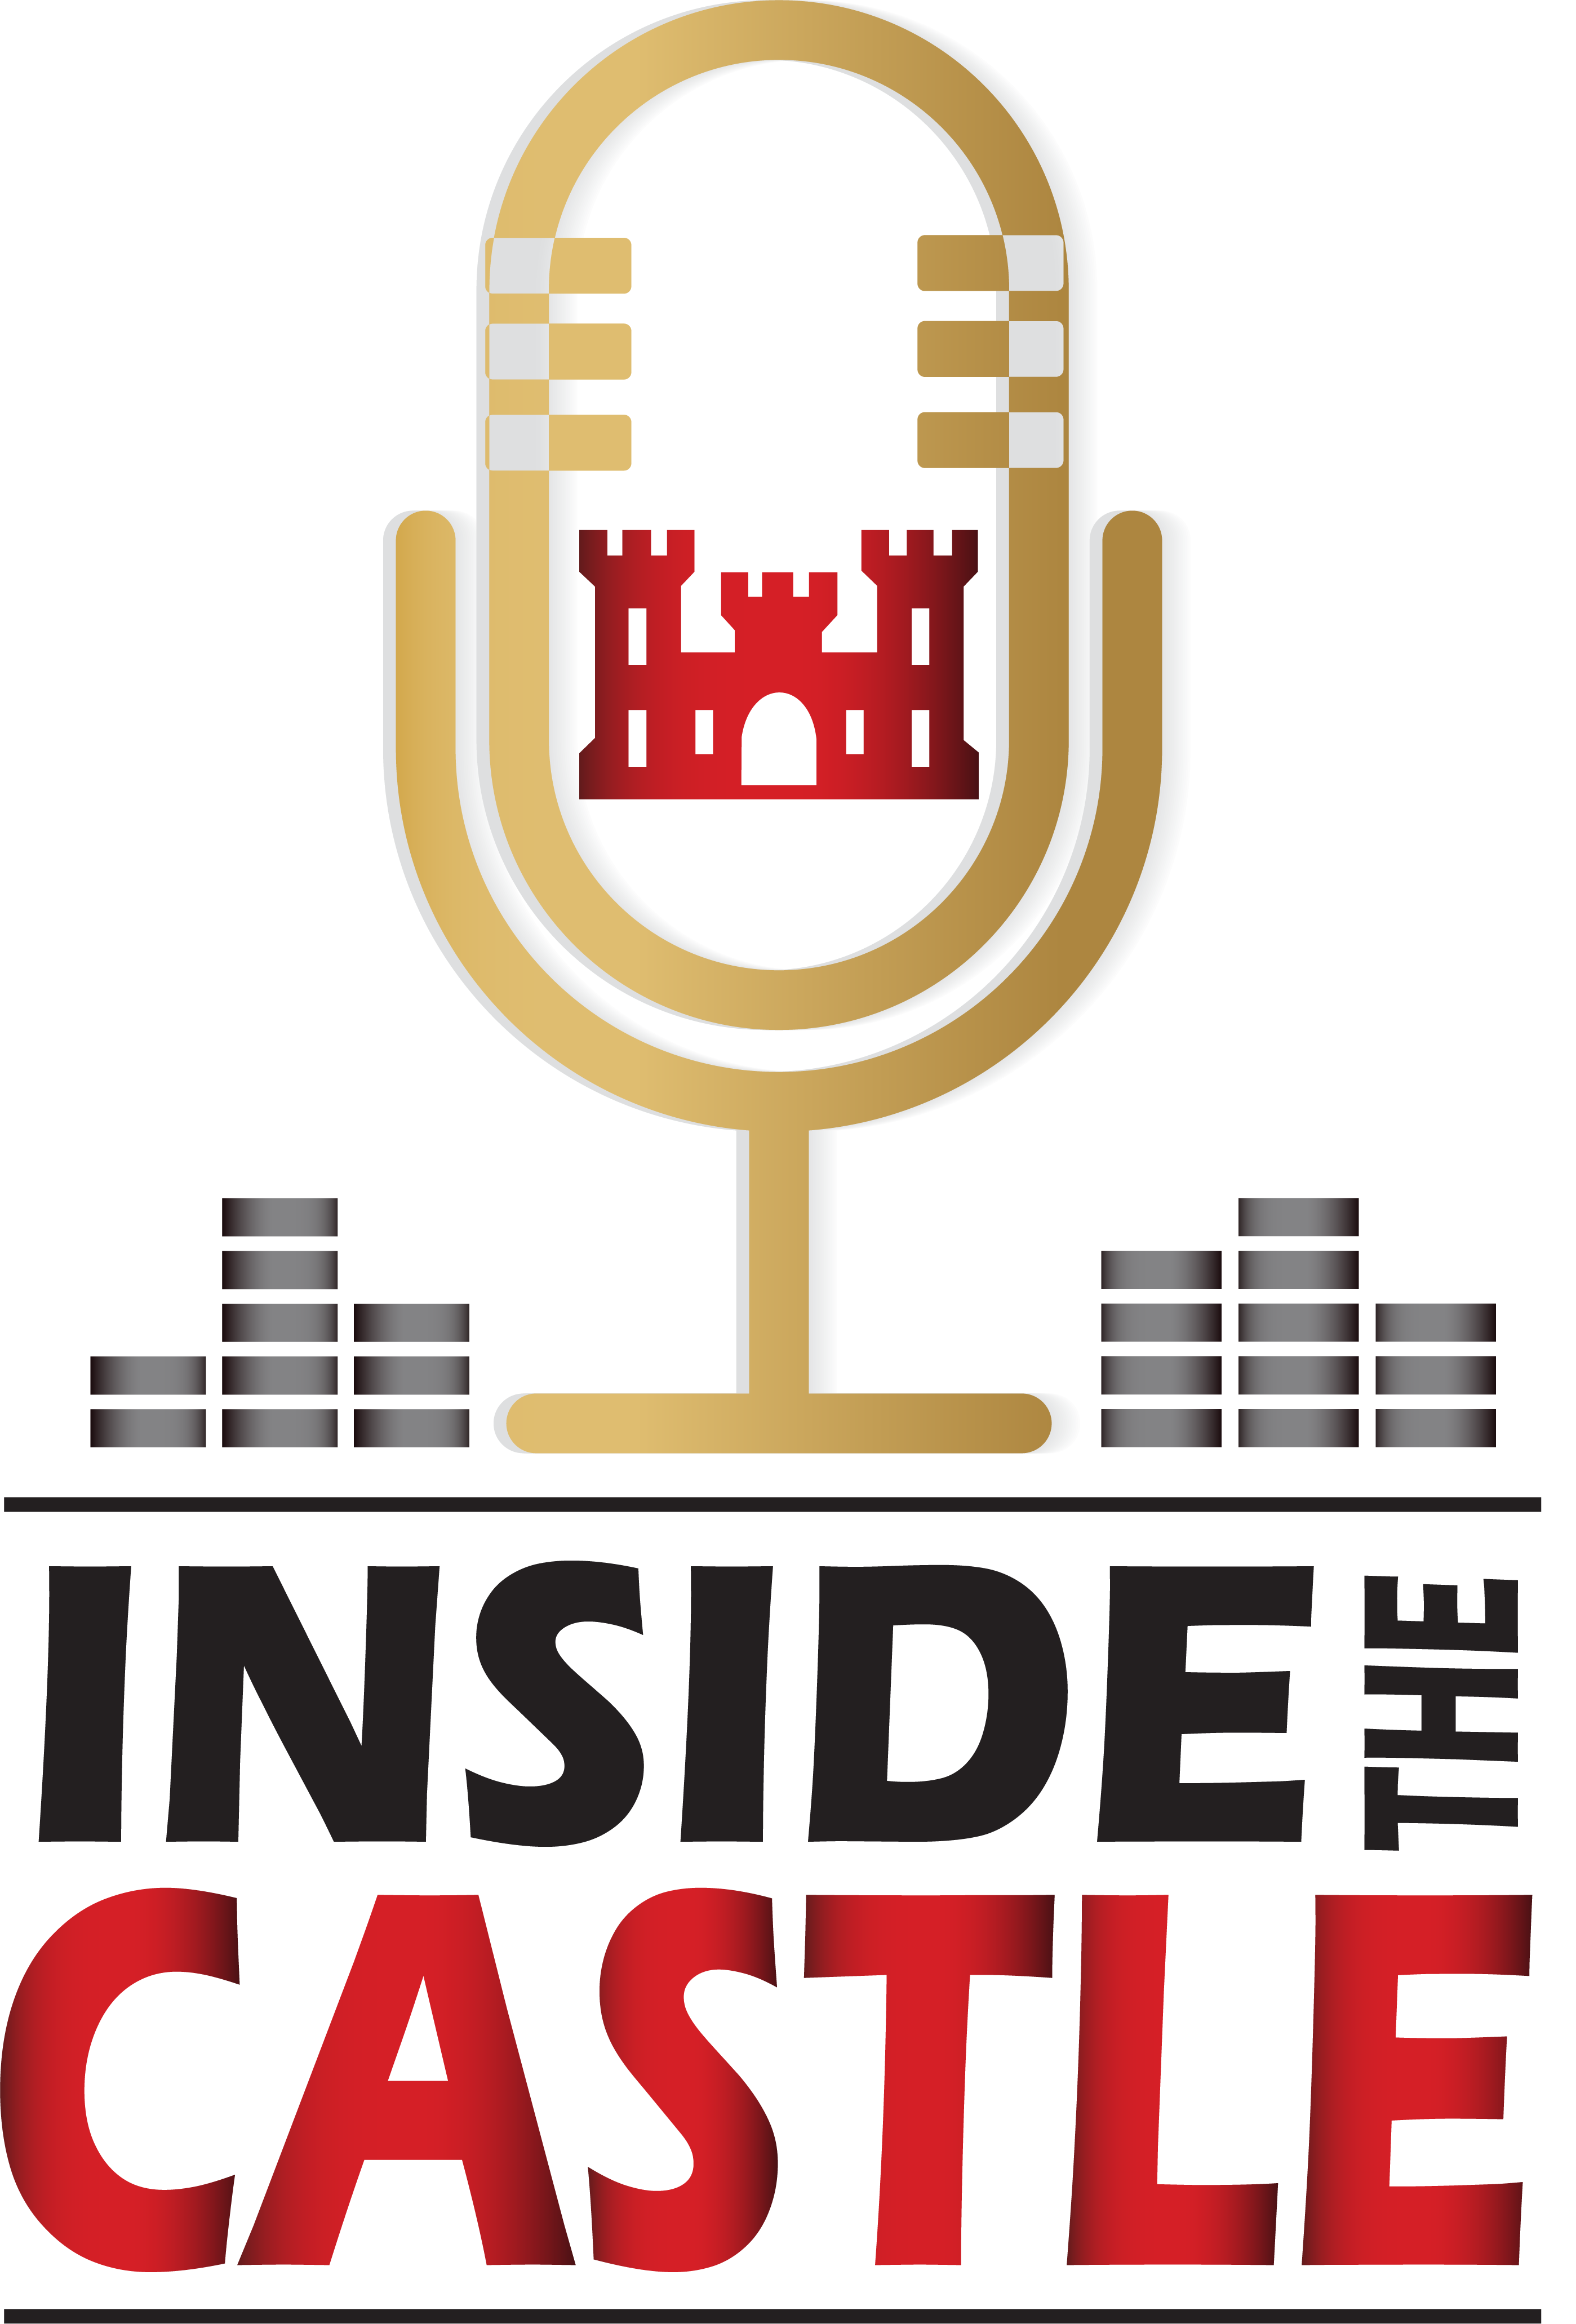 Inside the Castle logo